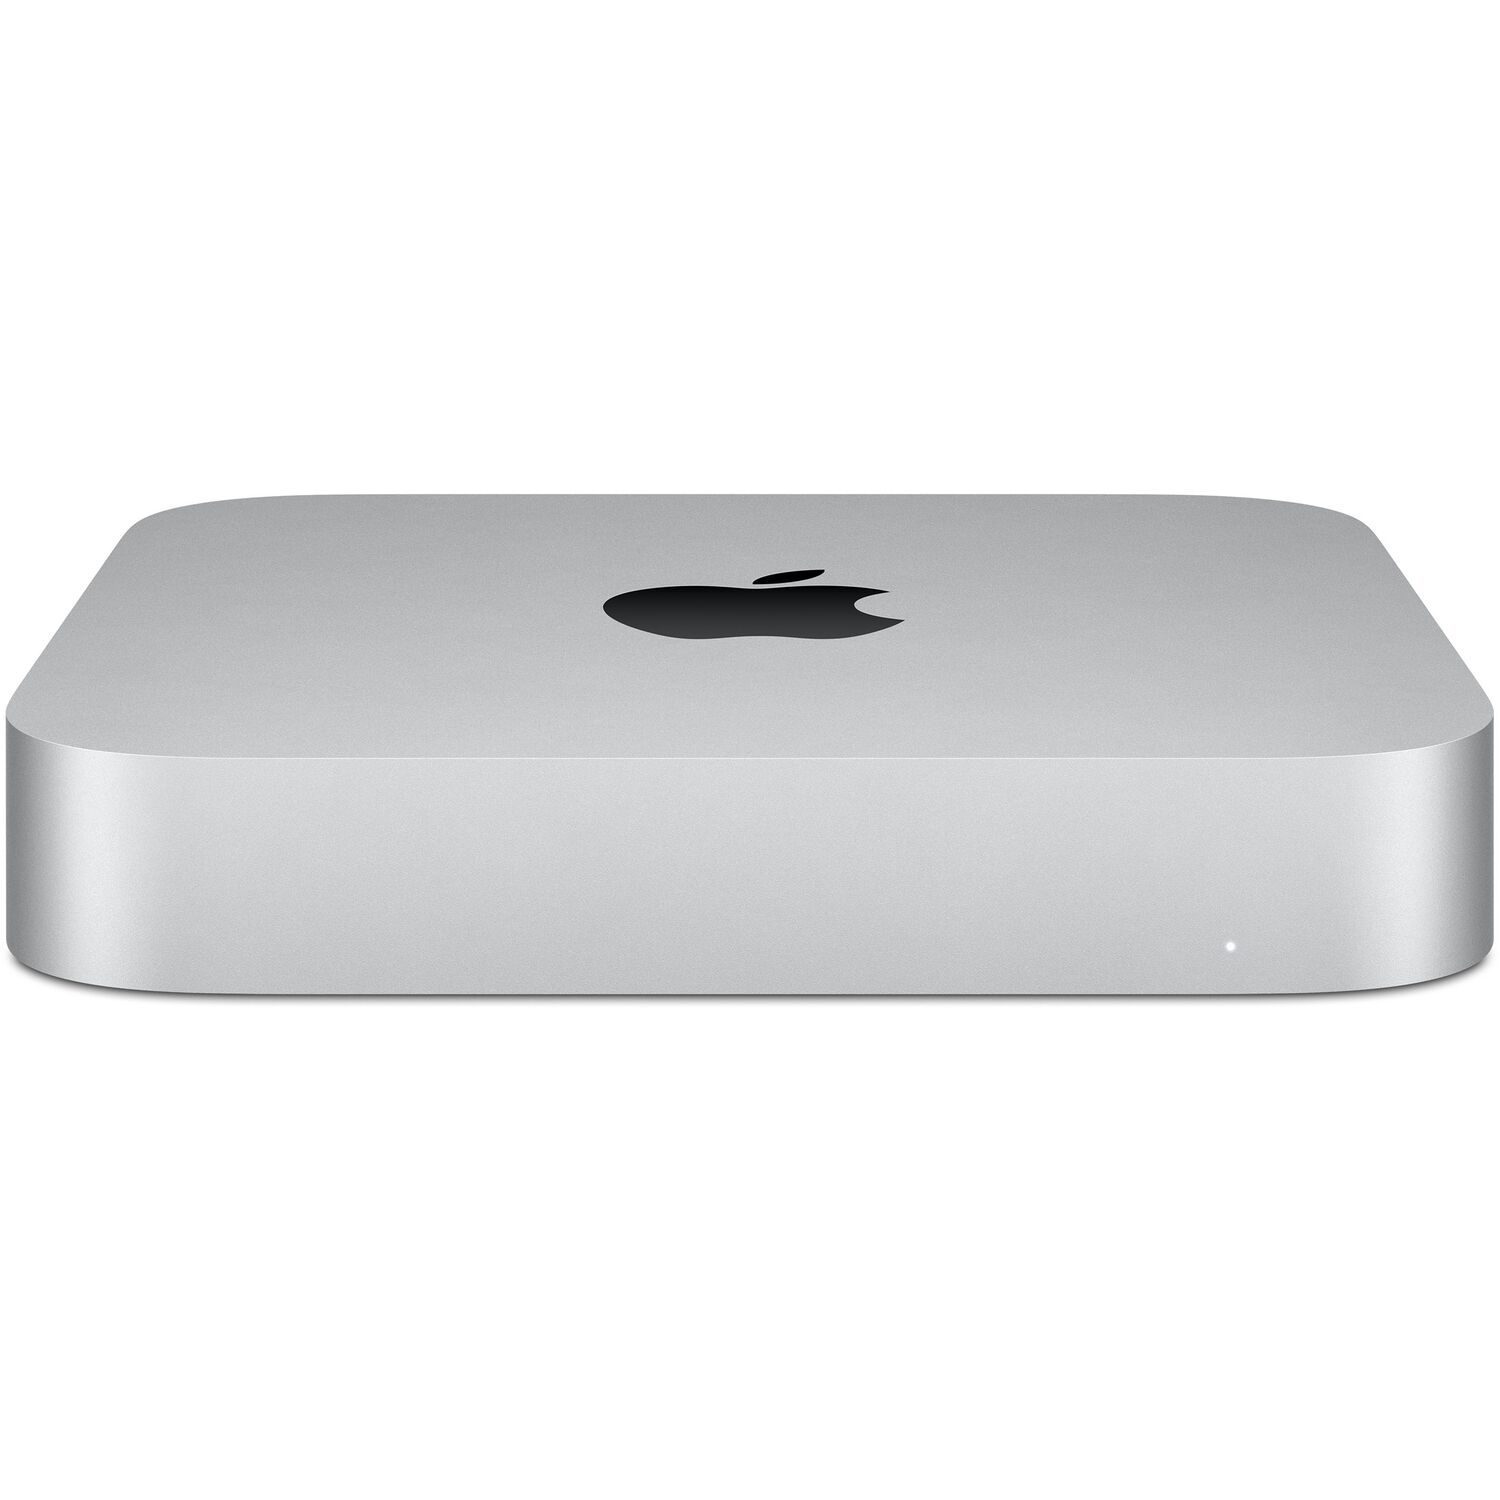 Ordenador Mac Mini de Apple con Chip M1 Finales de 2020